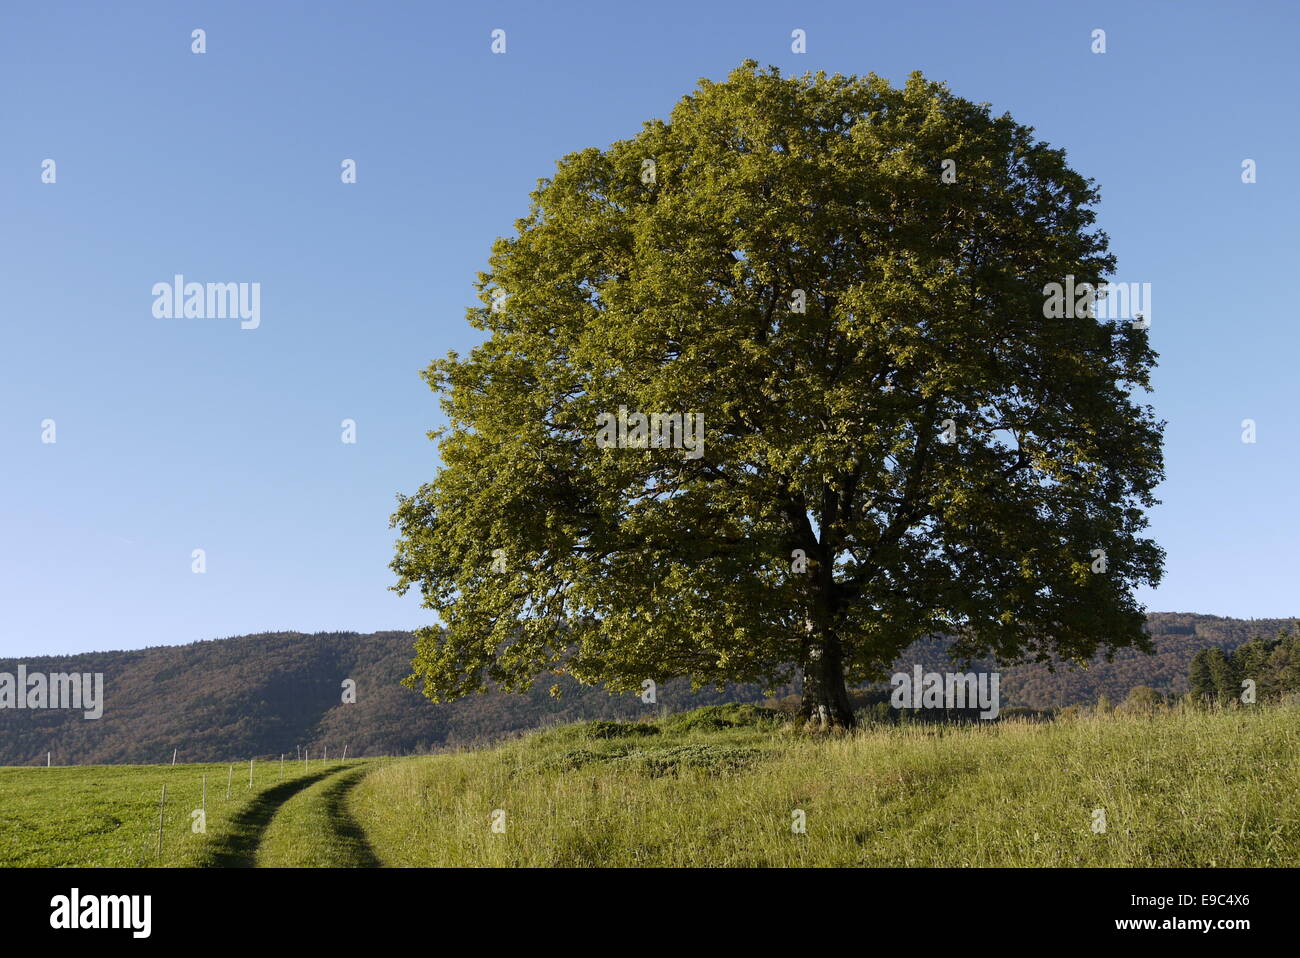 Walnut Tree (Juglans regia) in autunno bello e mite luce - Walnussbaum in schönem Herbstlicht auf Graswiese mit Bergkette Foto Stock